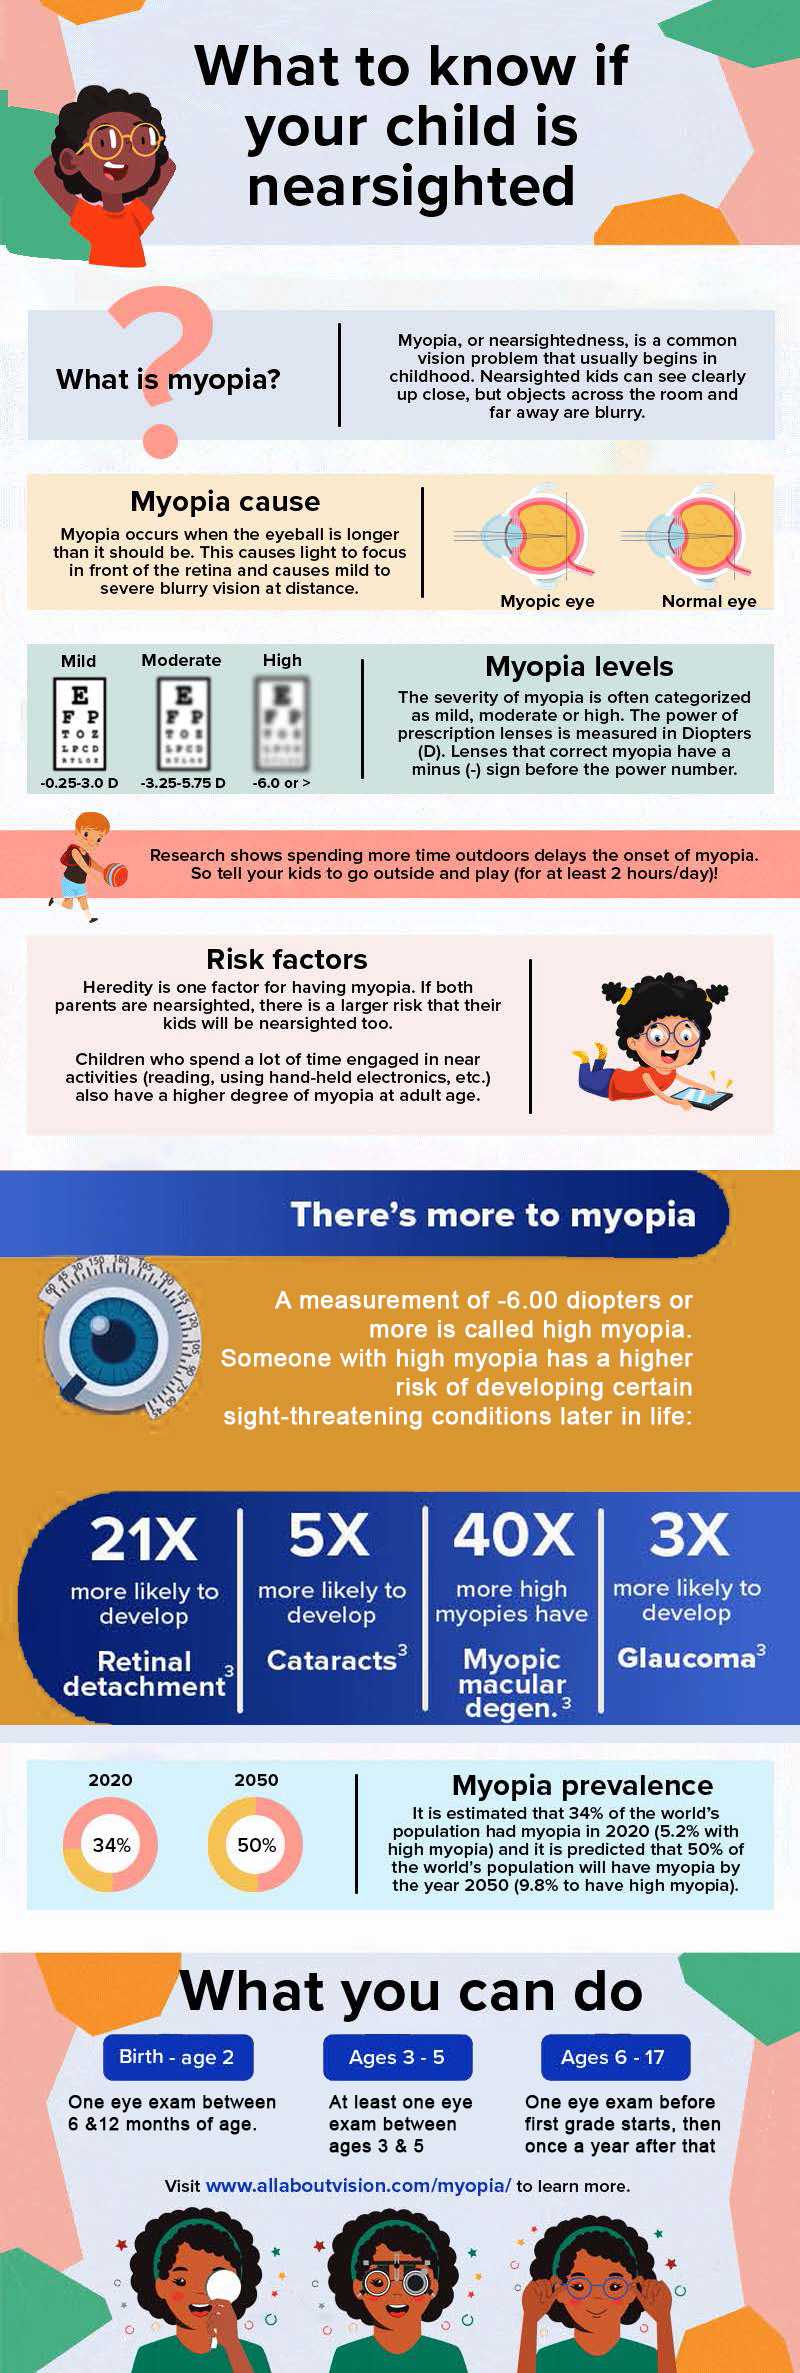 myopia facts infographic 2022 3.pdf